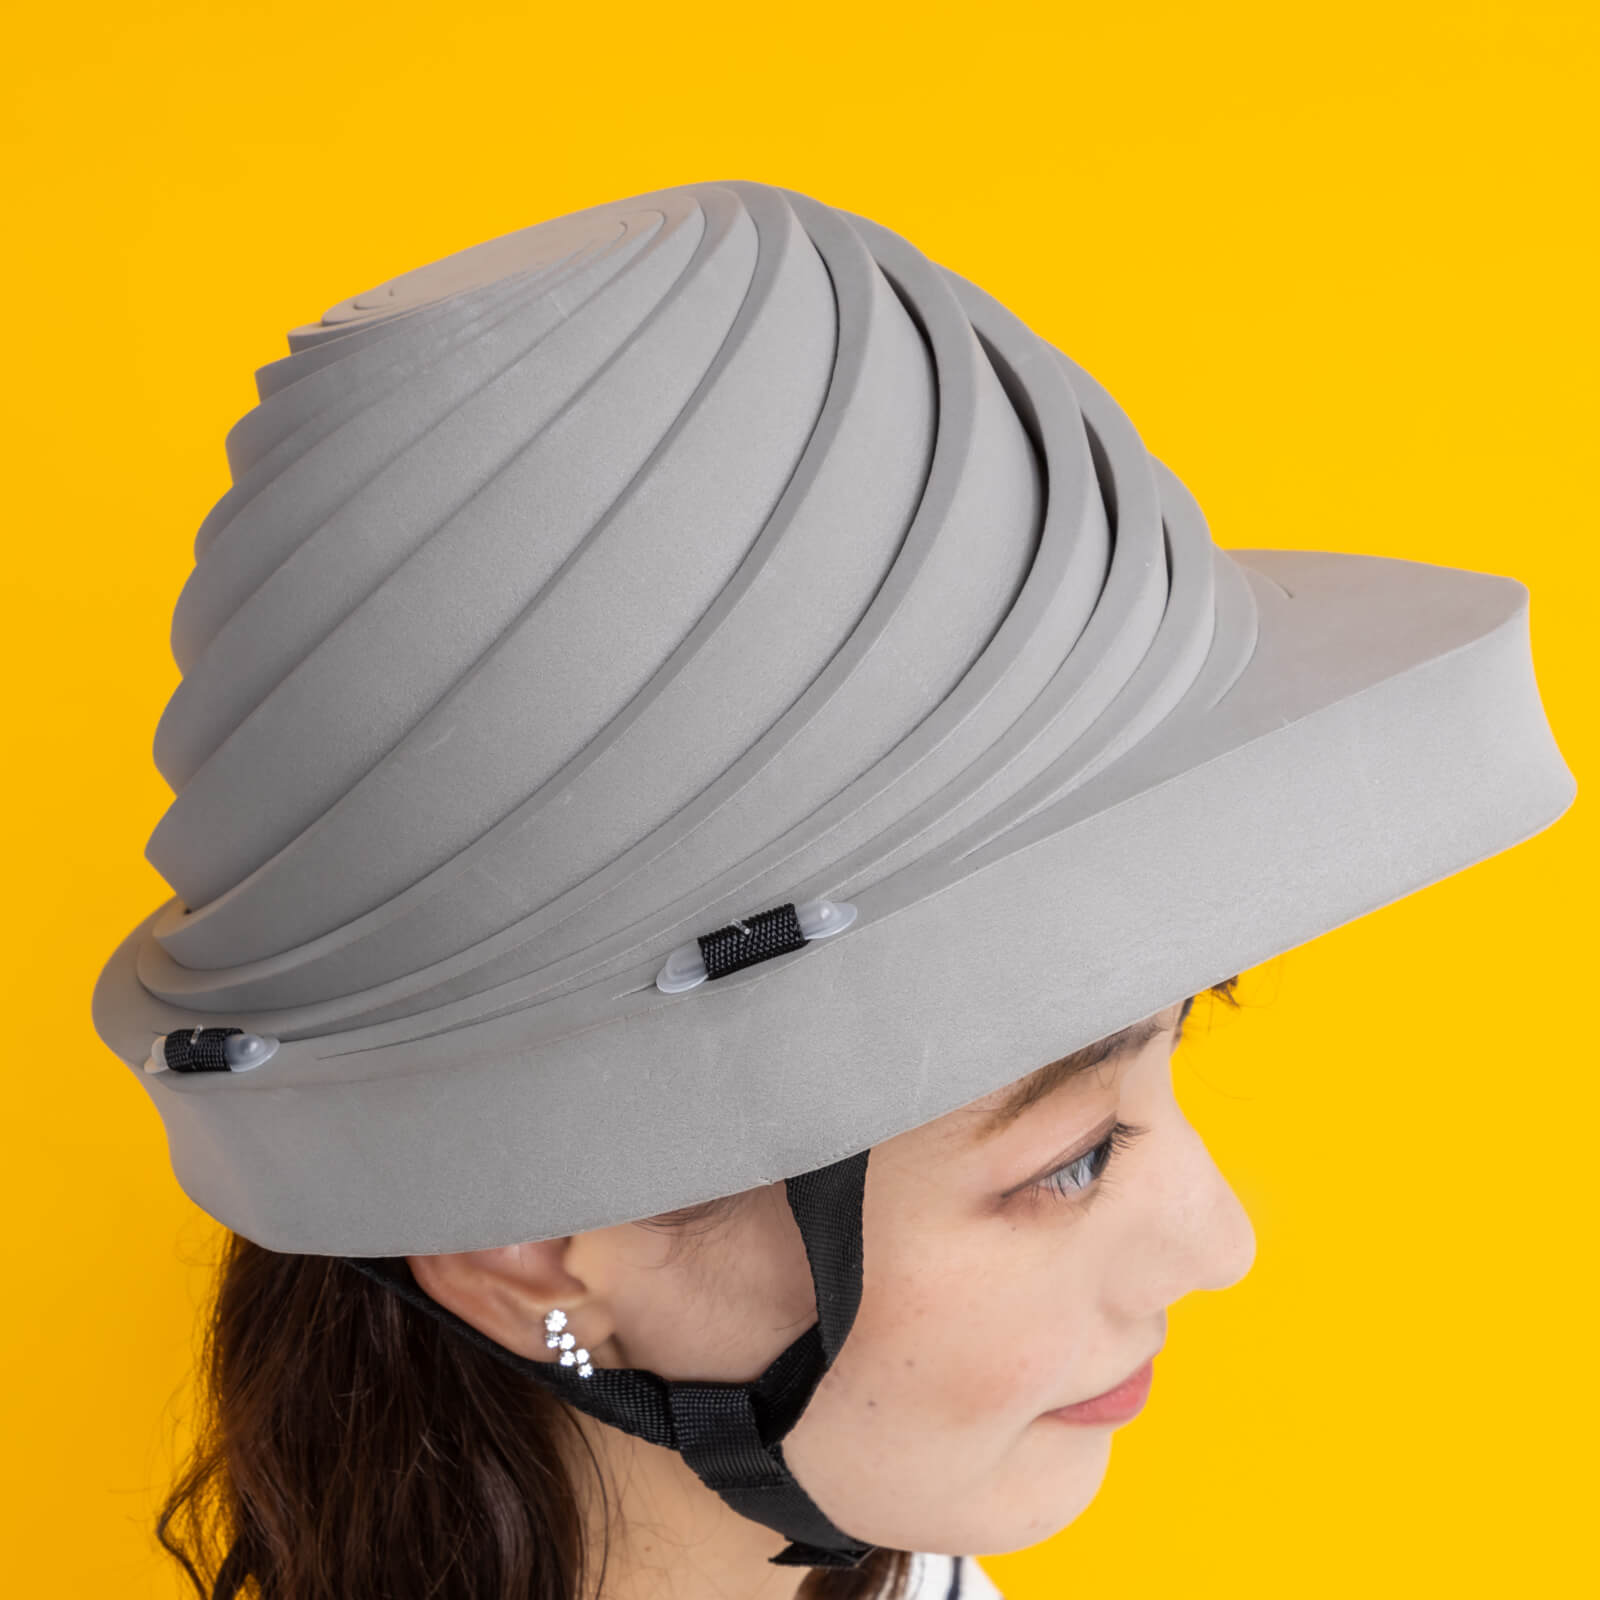 販売終了】避難用簡易保護帽 でるキャップ | 朝日新聞モール